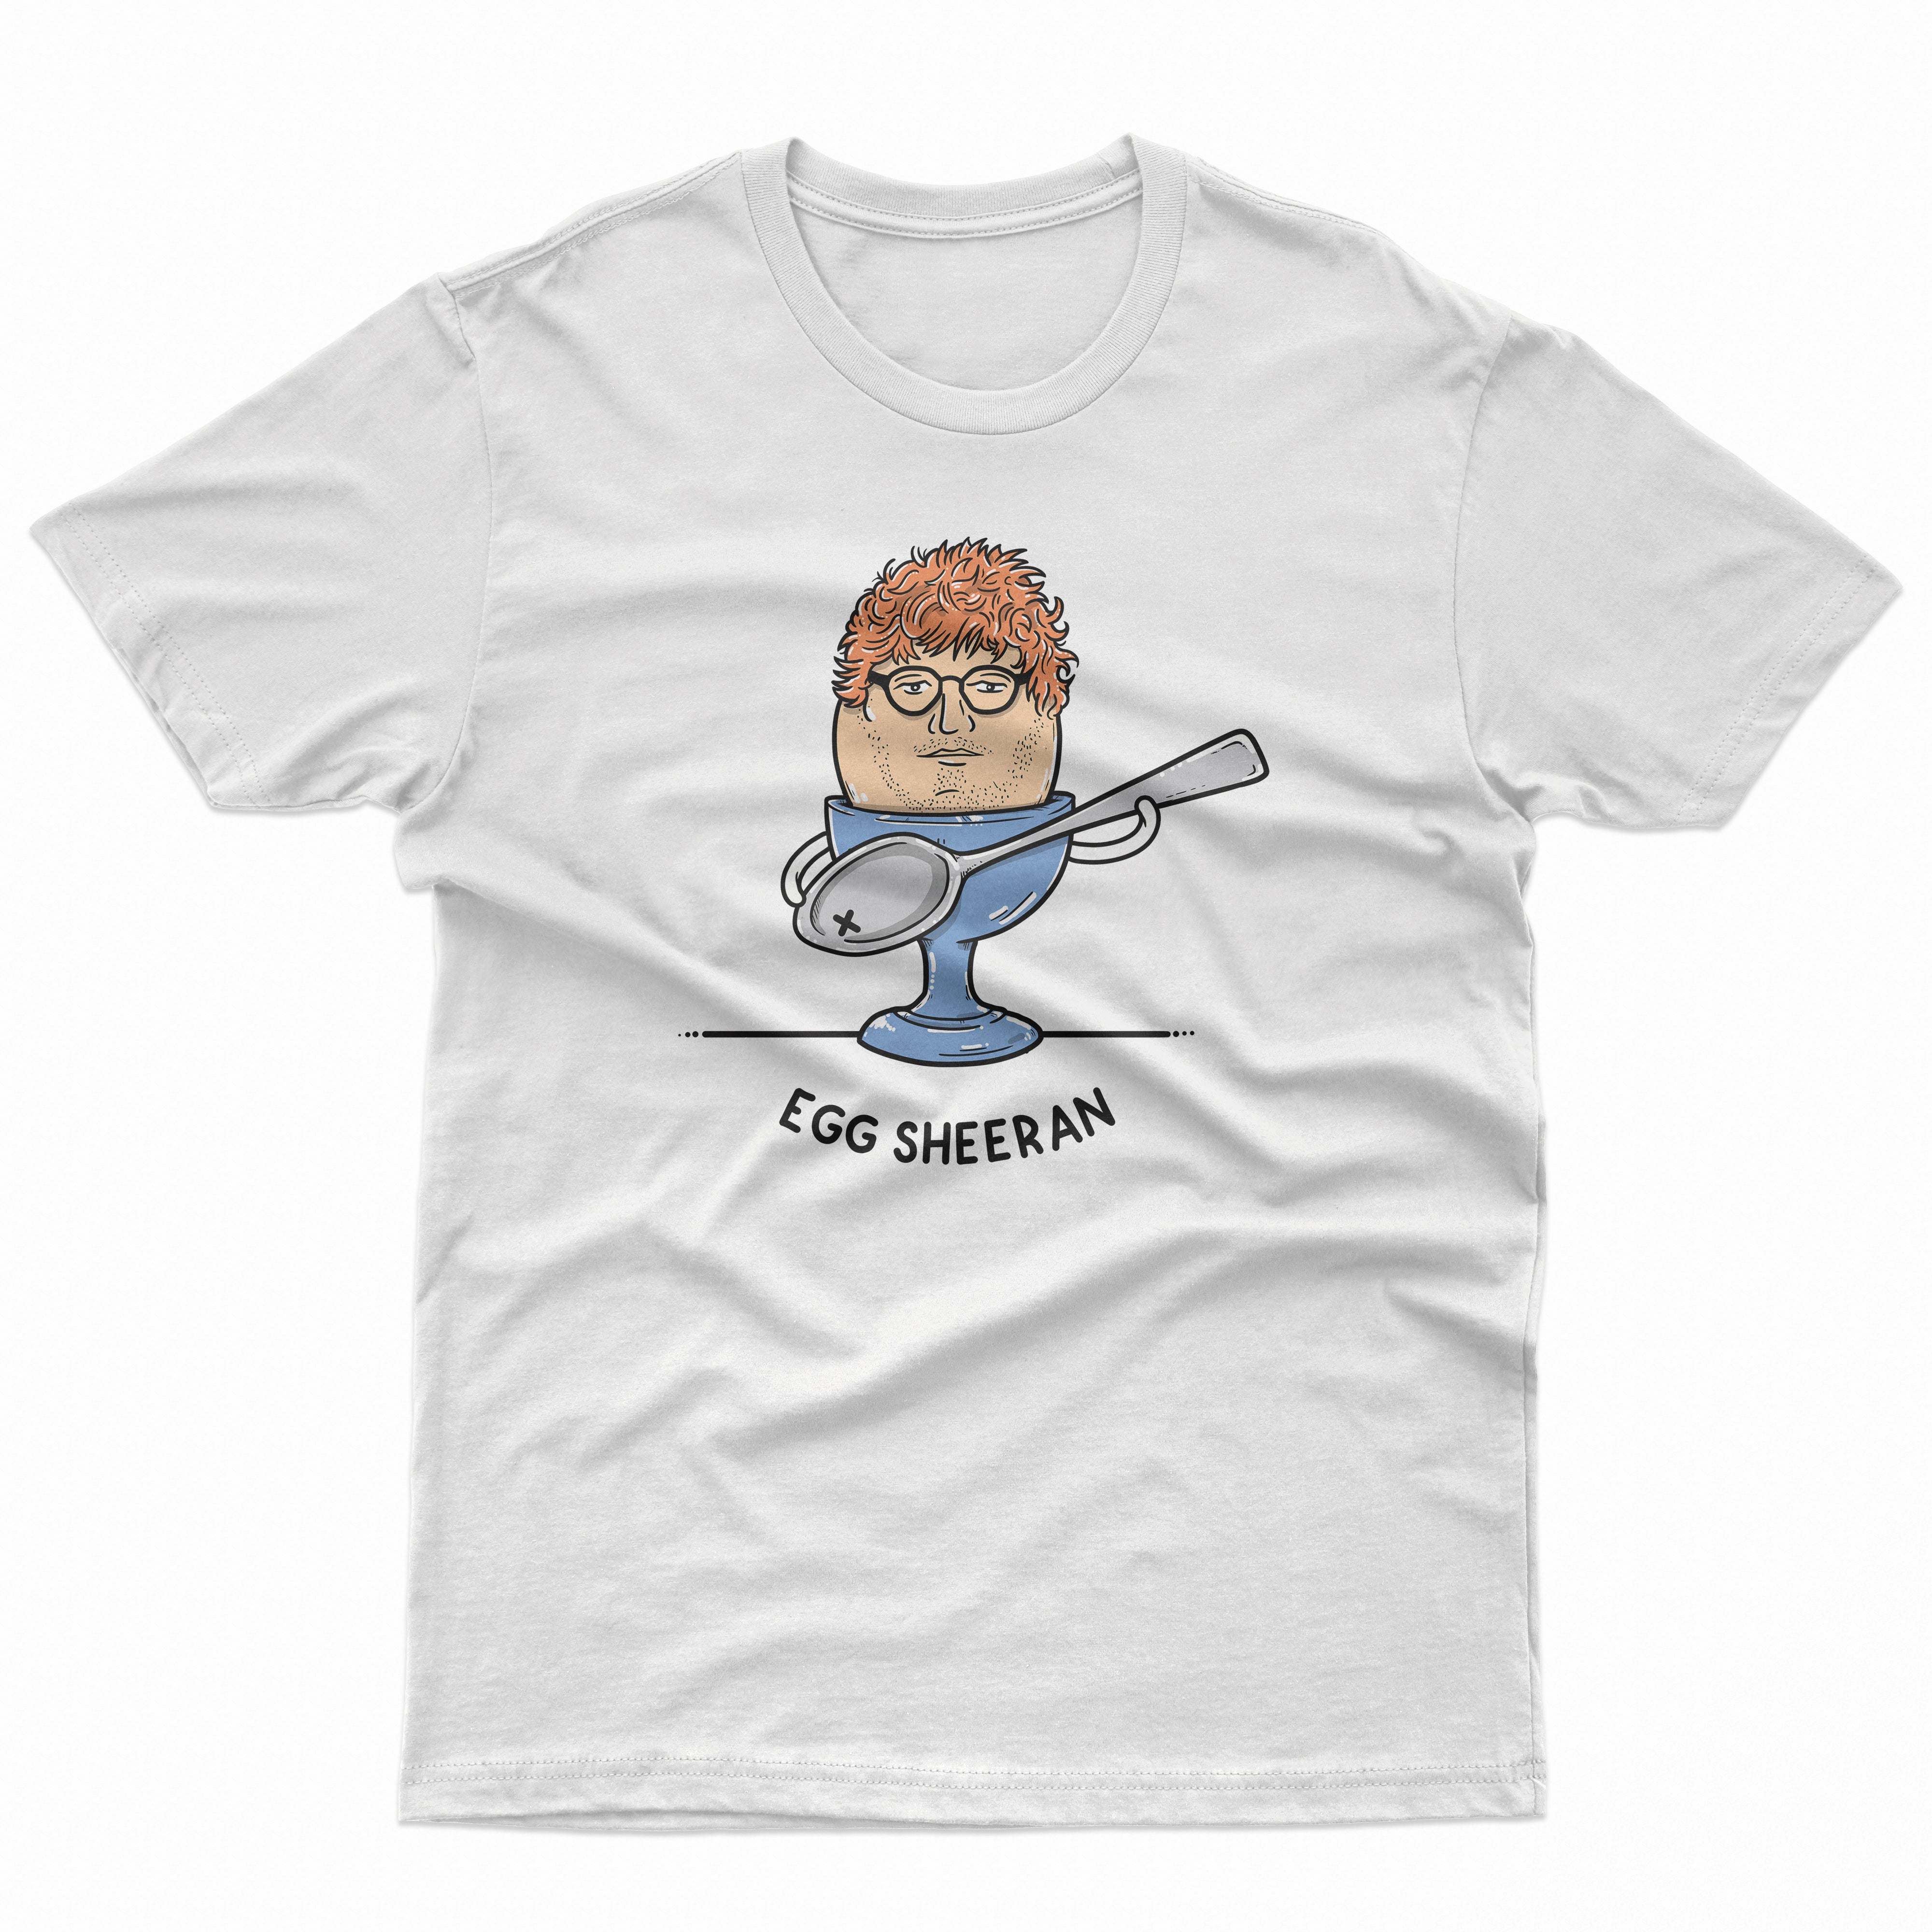 Egg Sheeran T Shirt